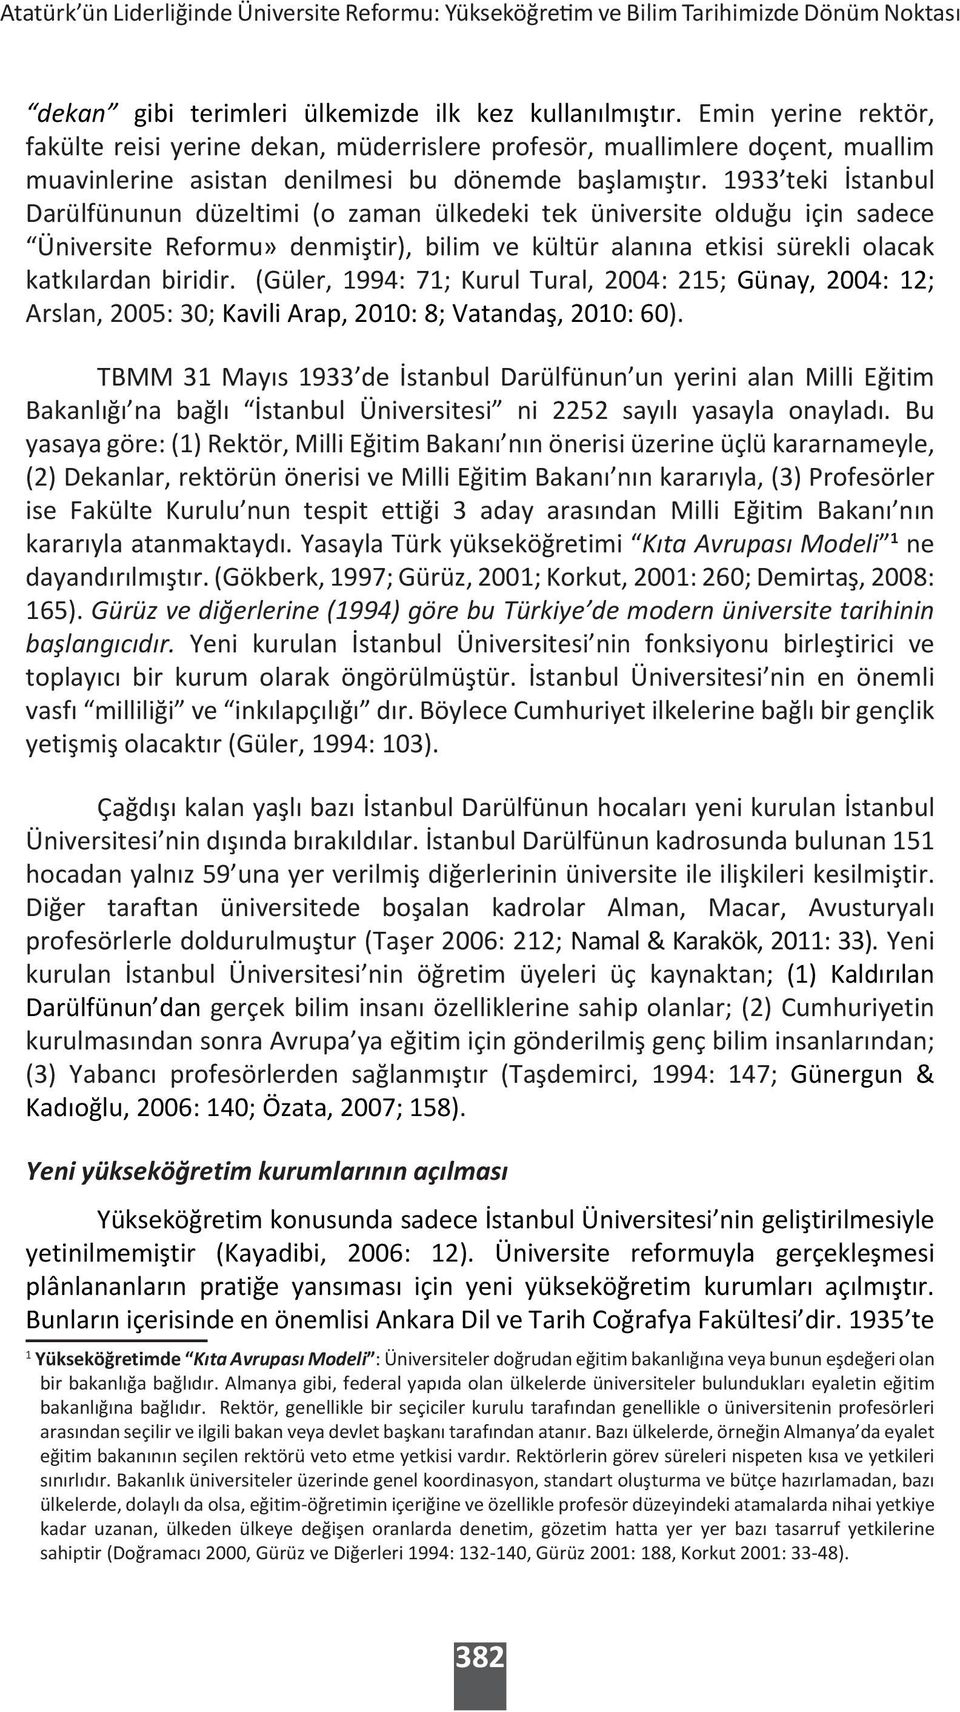 1933 teki İstanbul Darülfünunun düzeltimi (o zaman ülkedeki tek üniversite olduğu için sadece Üniversite Reformu» denmiştir), bilim ve kültür alanına etkisi sürekli olacak katkılardan biridir.